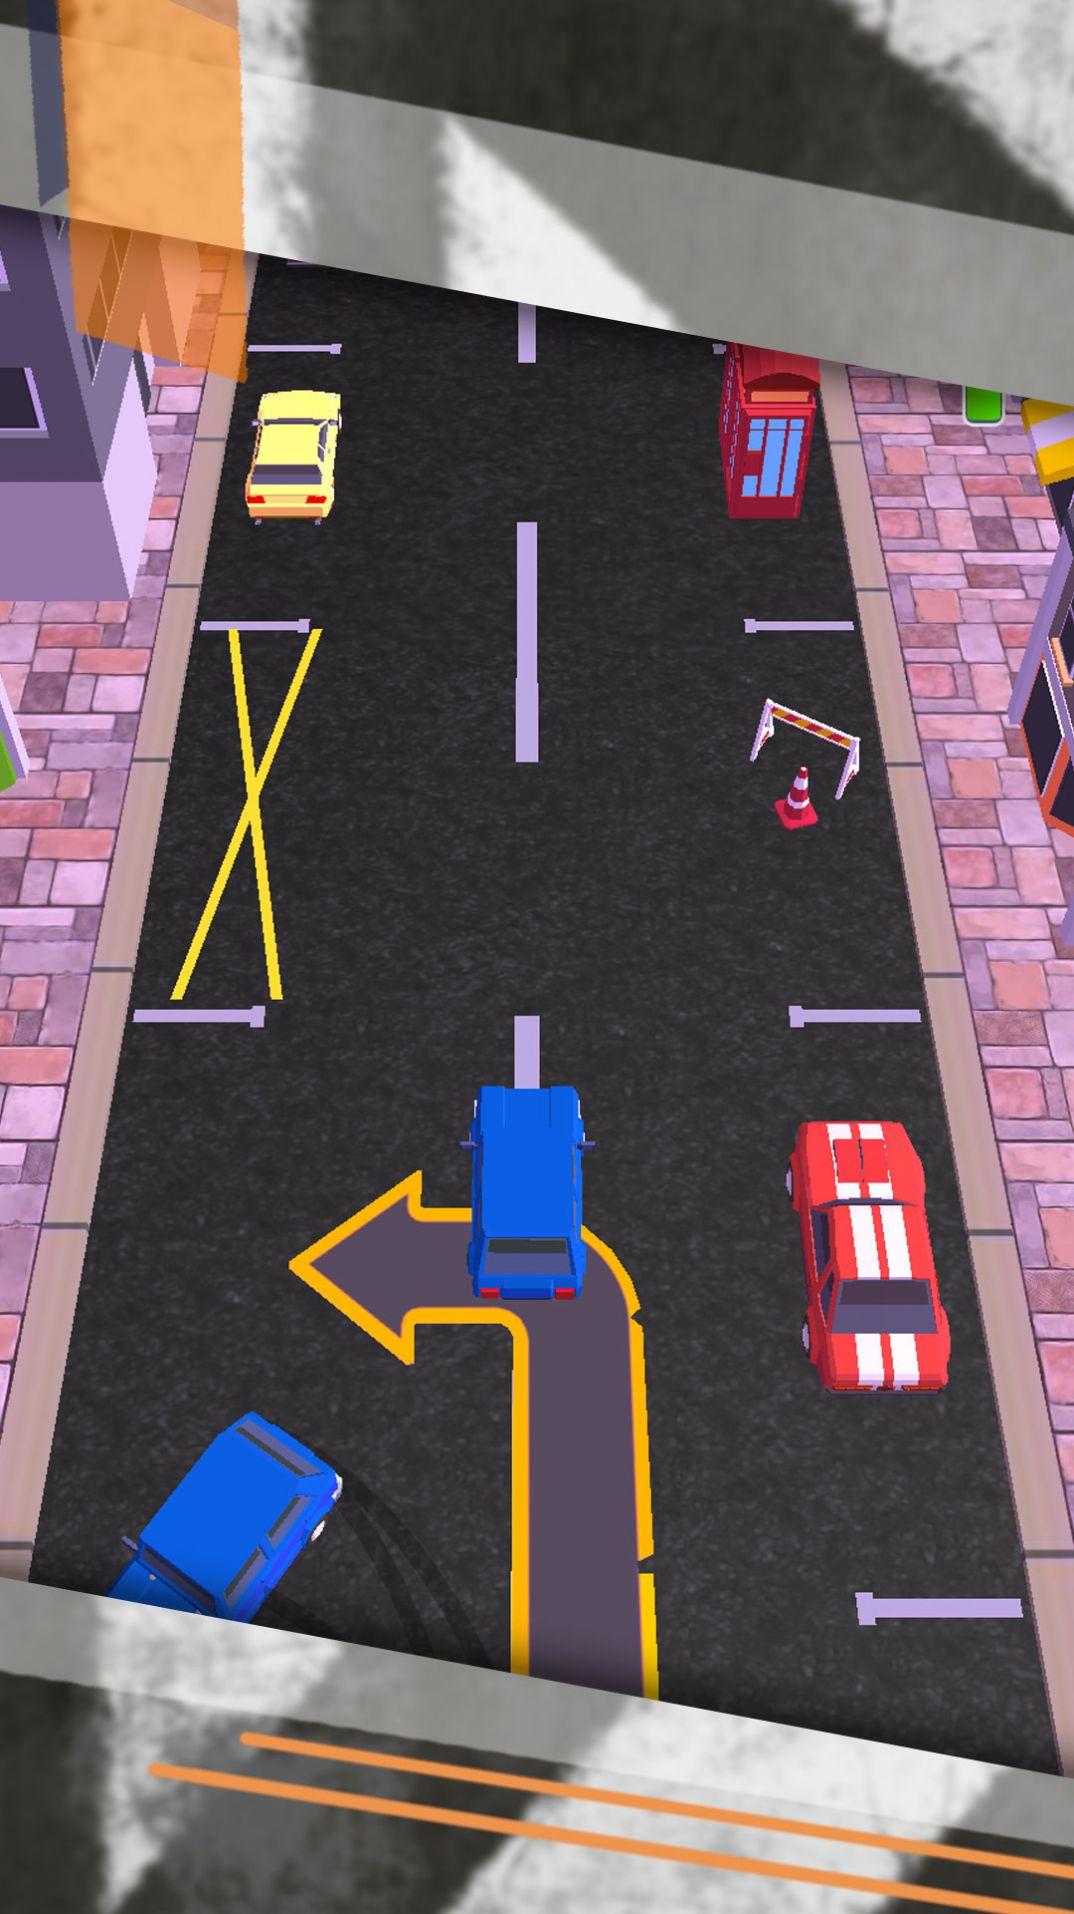 驾校停车模拟器游戏官方版截图2: